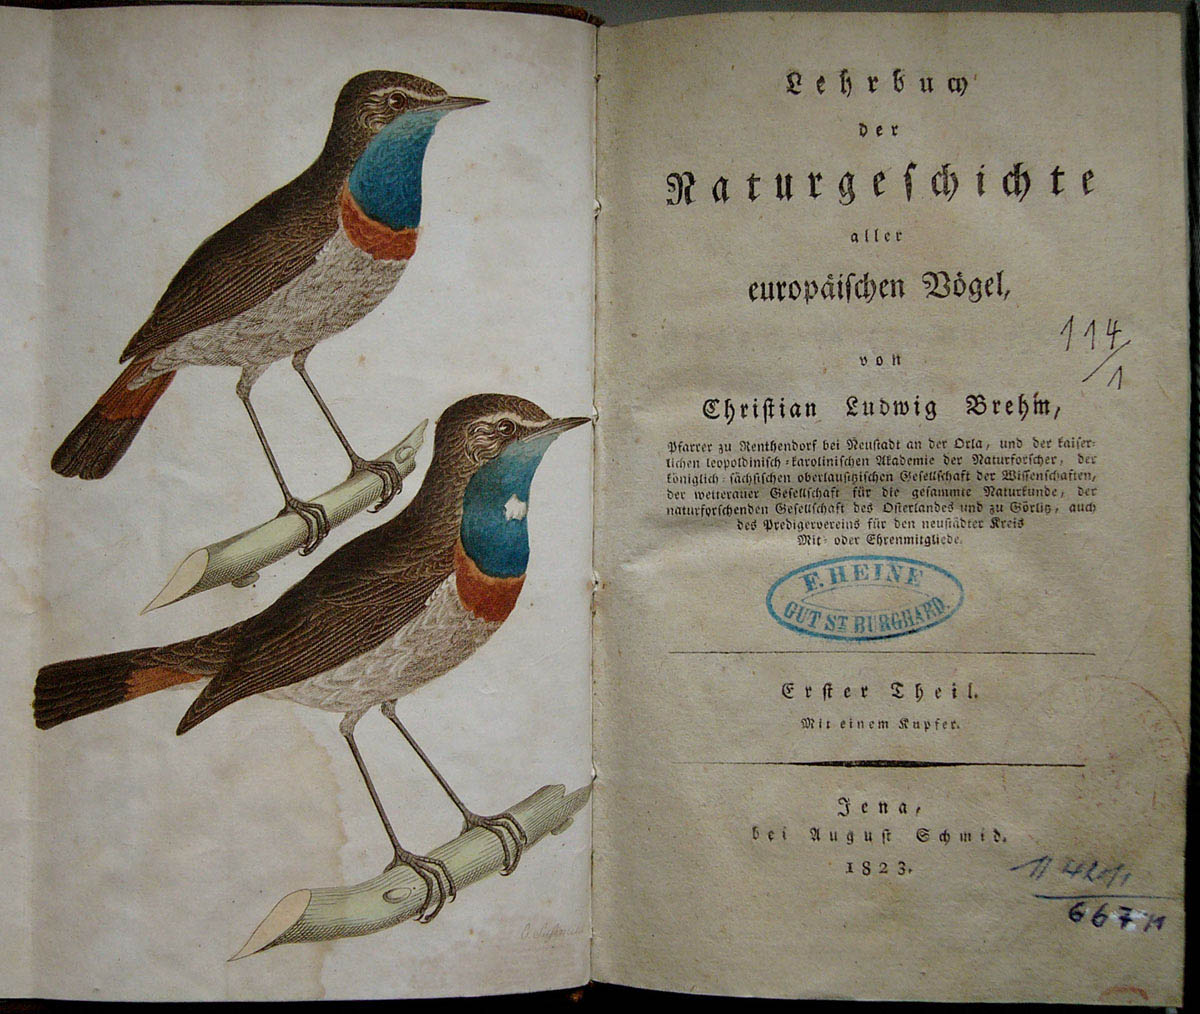 Christian Ludwig Brehms “Lehrbuch der Naturgeschichte aller europäischen Vögel“ (Museum Heineanum CC BY-NC-SA)